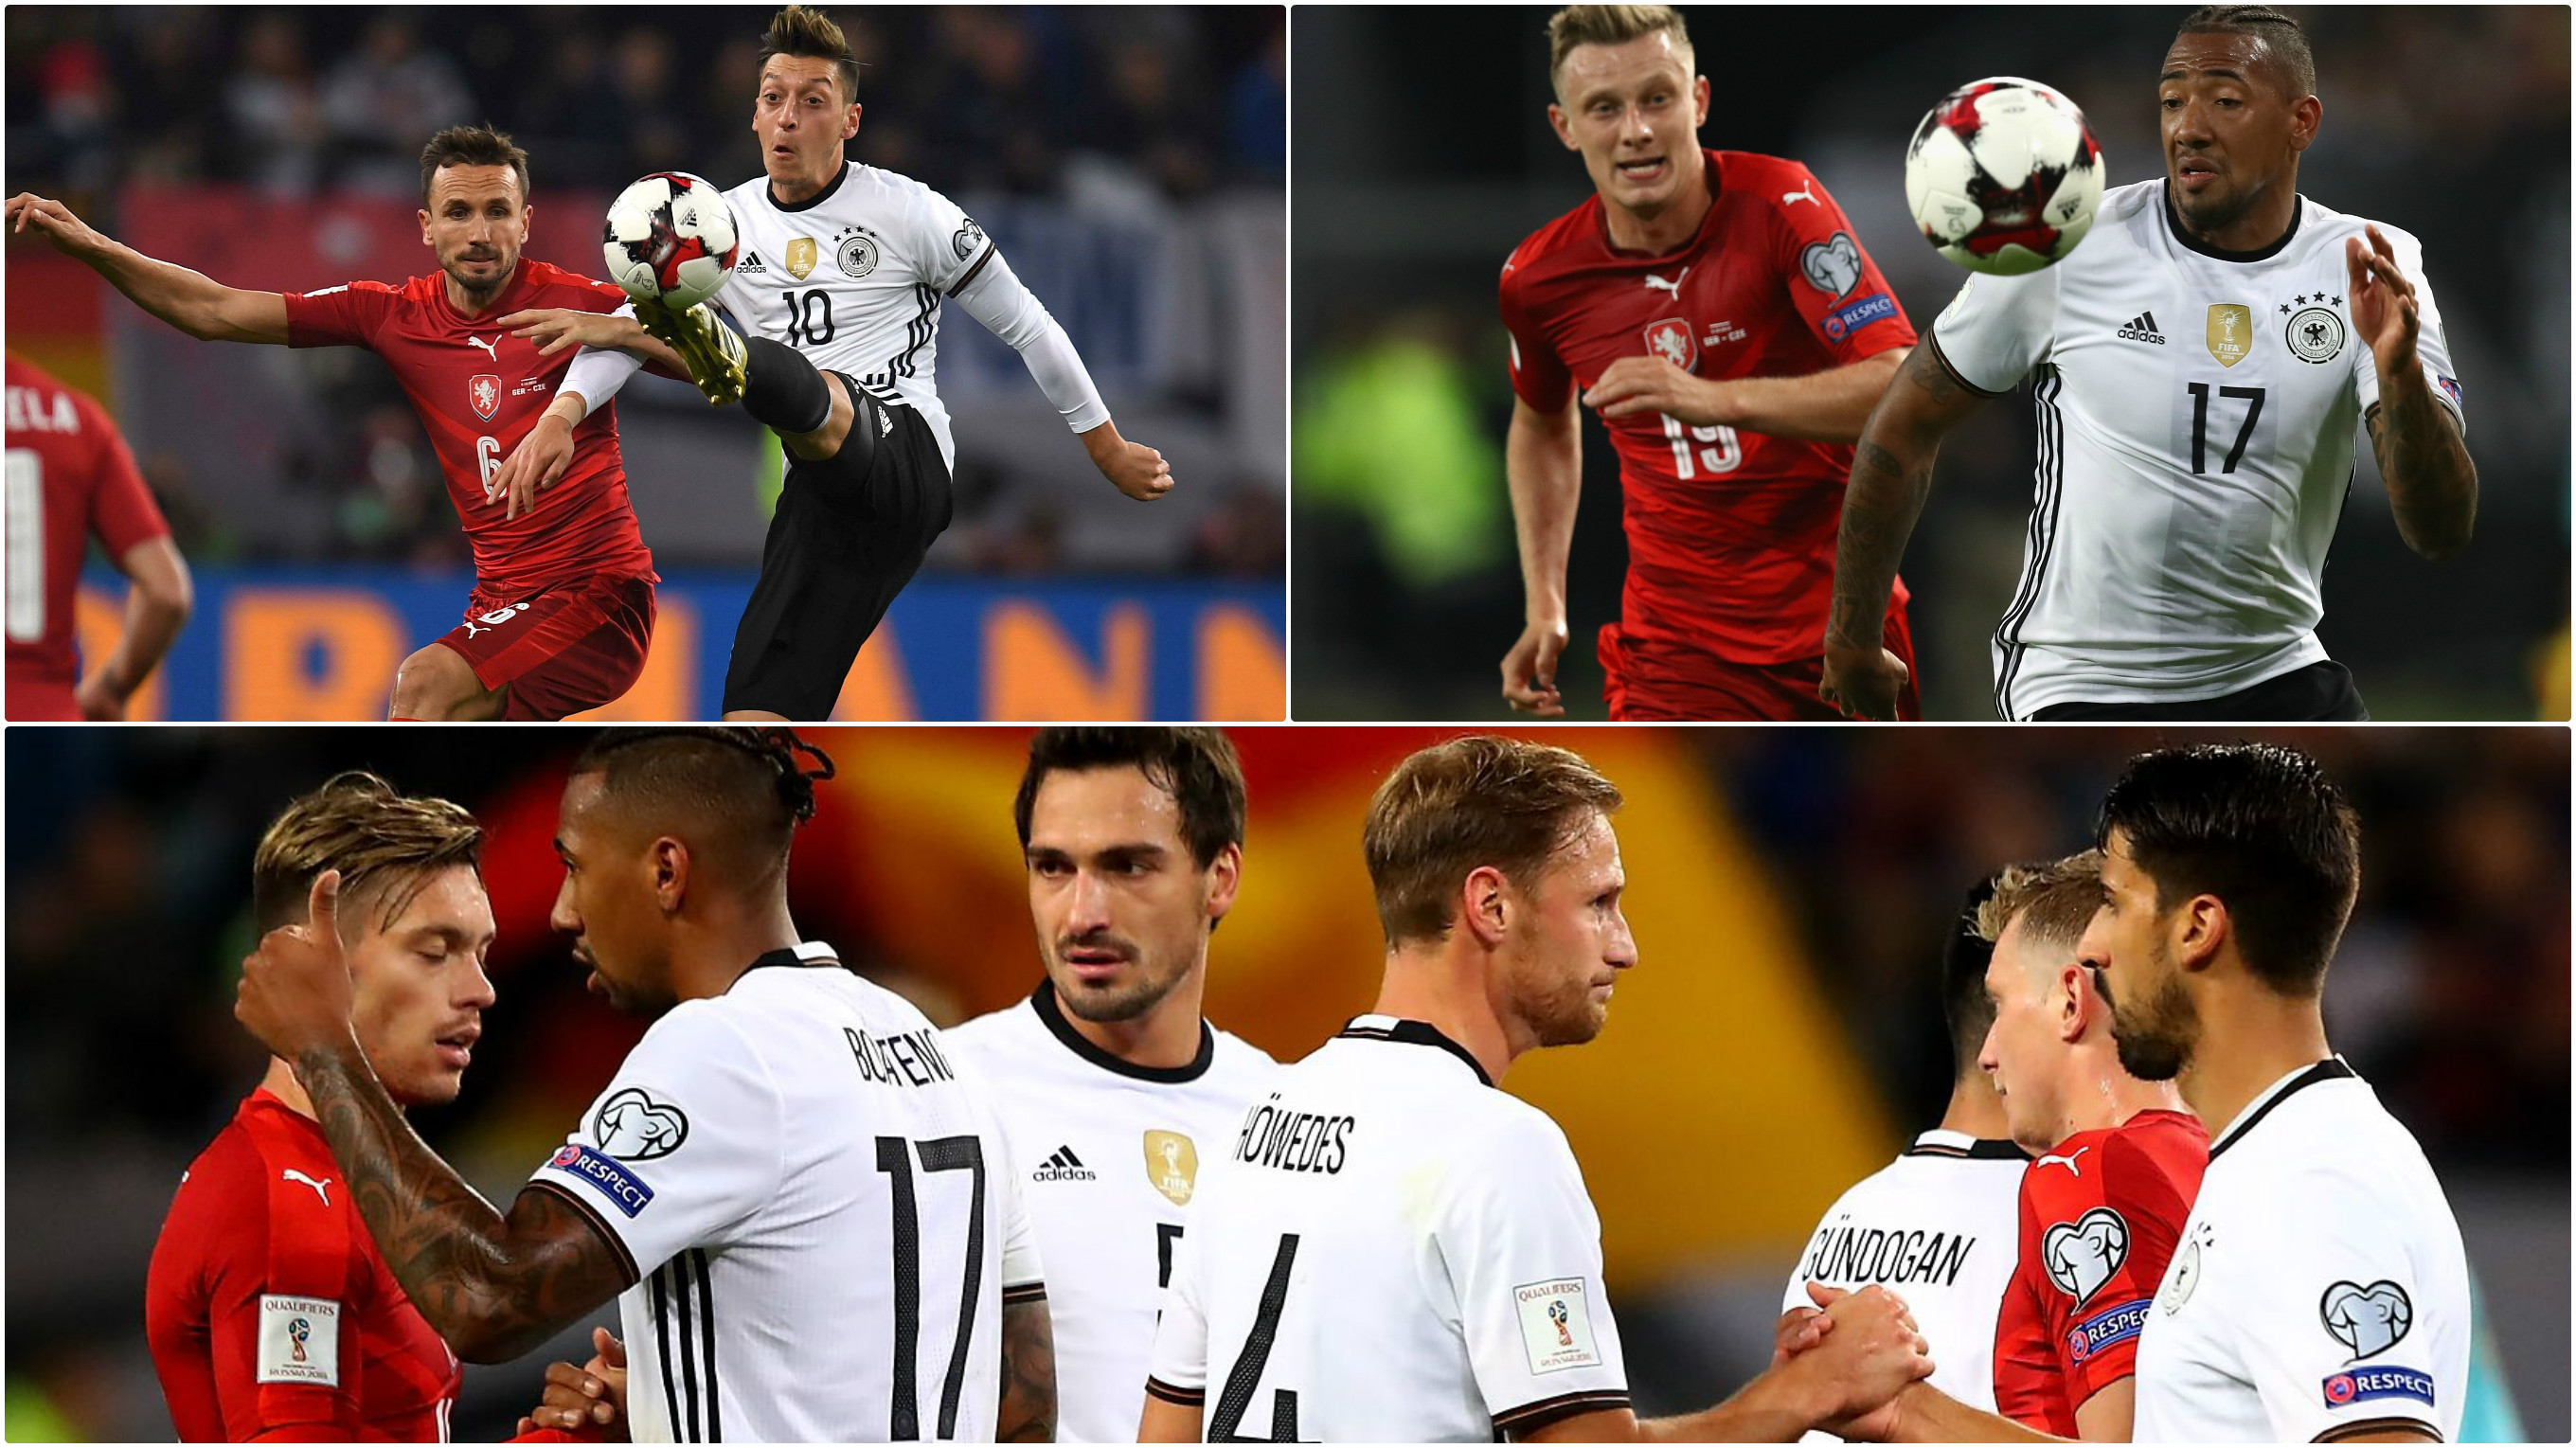 Am 1. September gegen Tschechien: Deutschland in der WM-Qualifikation © Getty Images/Collage DFB